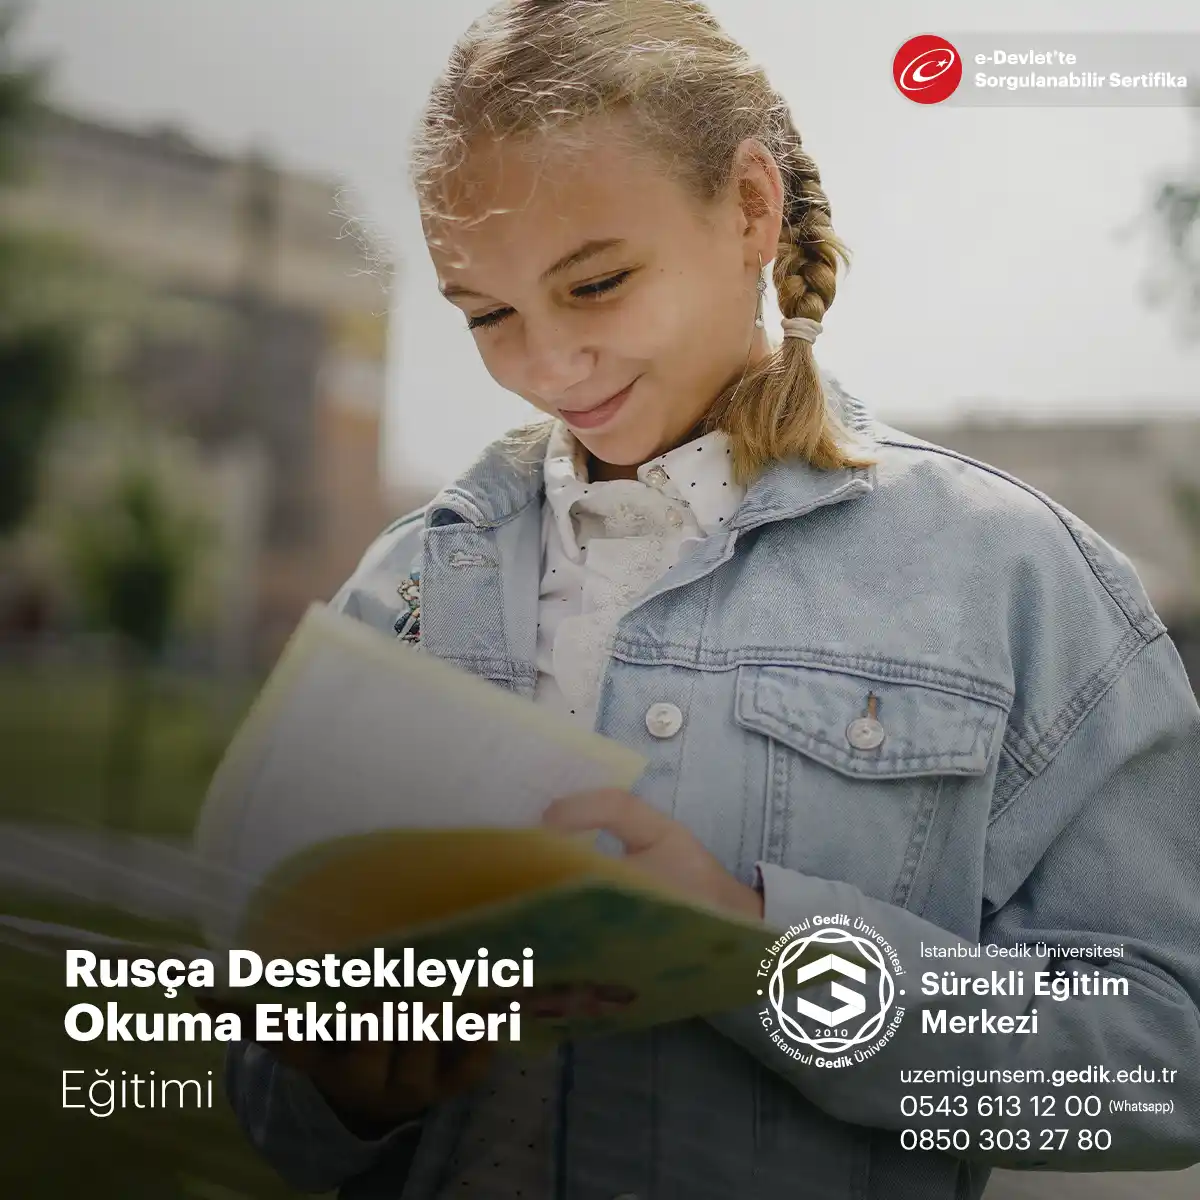  Rusça öğrenenlerin okuma becerilerini geliştirmek ve okuduğunu anlama yeteneklerini artırmak için kullanılan yöntemlerdir. 